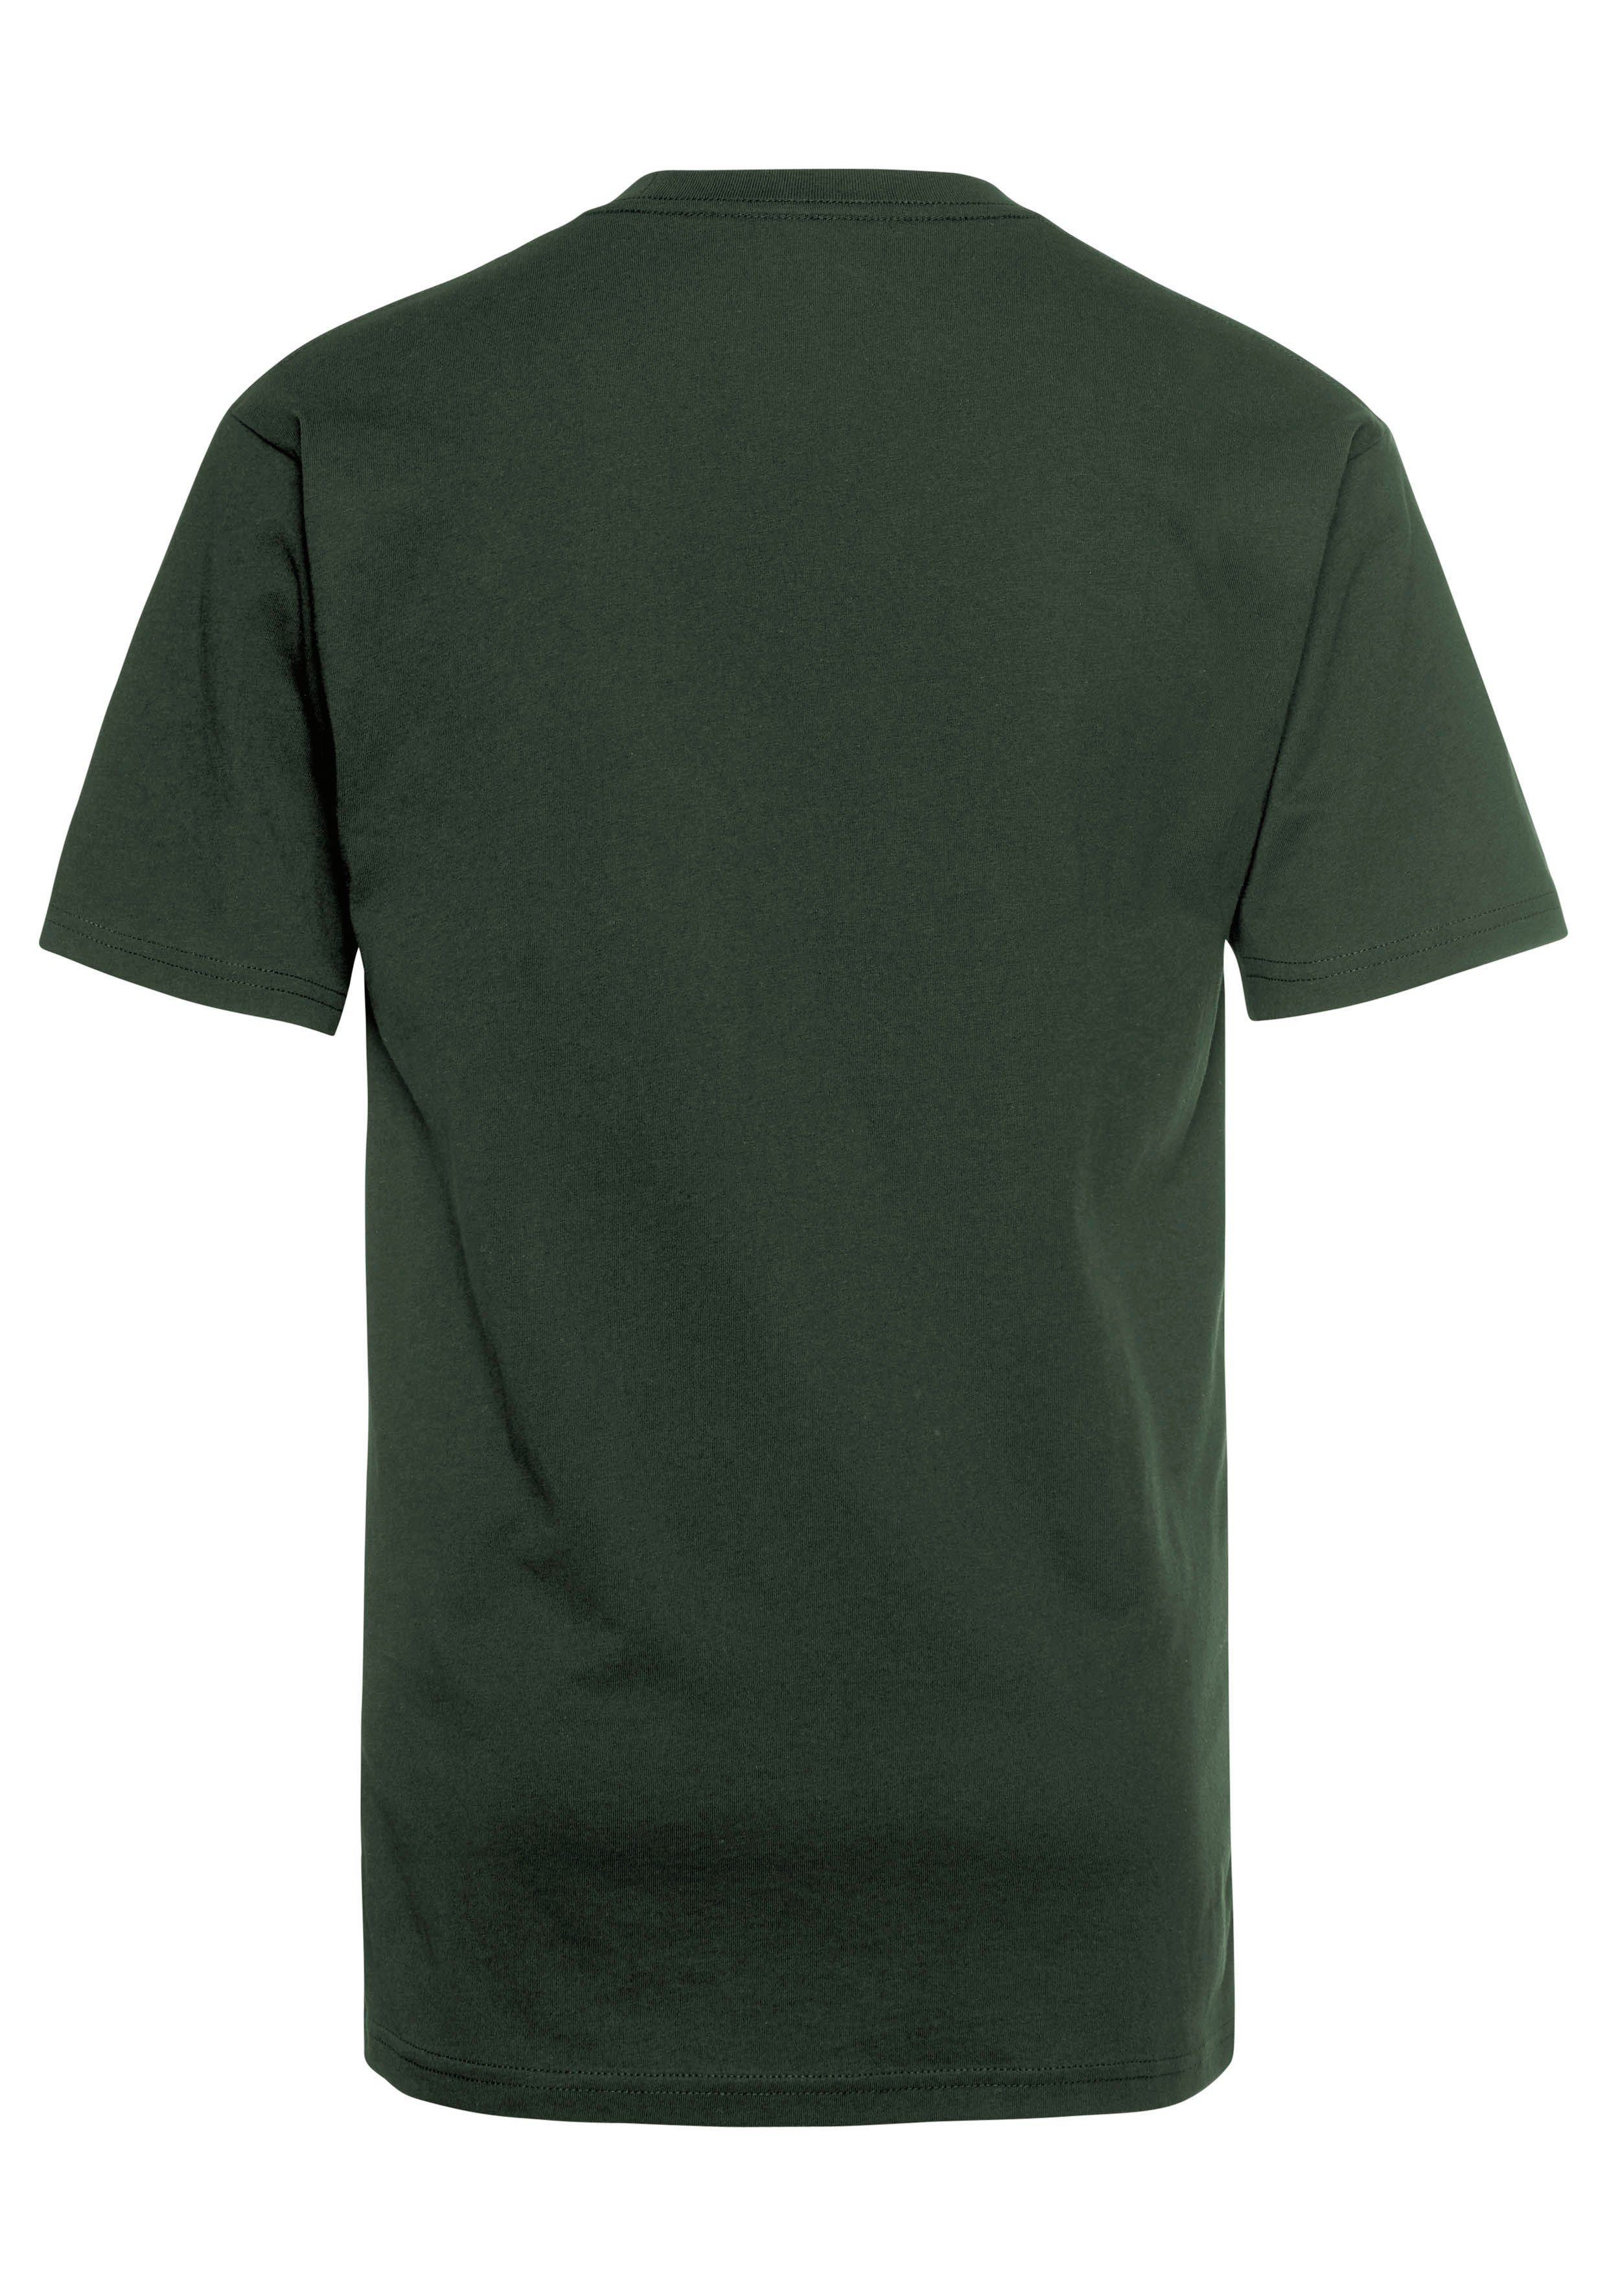 Vans T-Shirt LEFT CHEST LOGO grün TEE